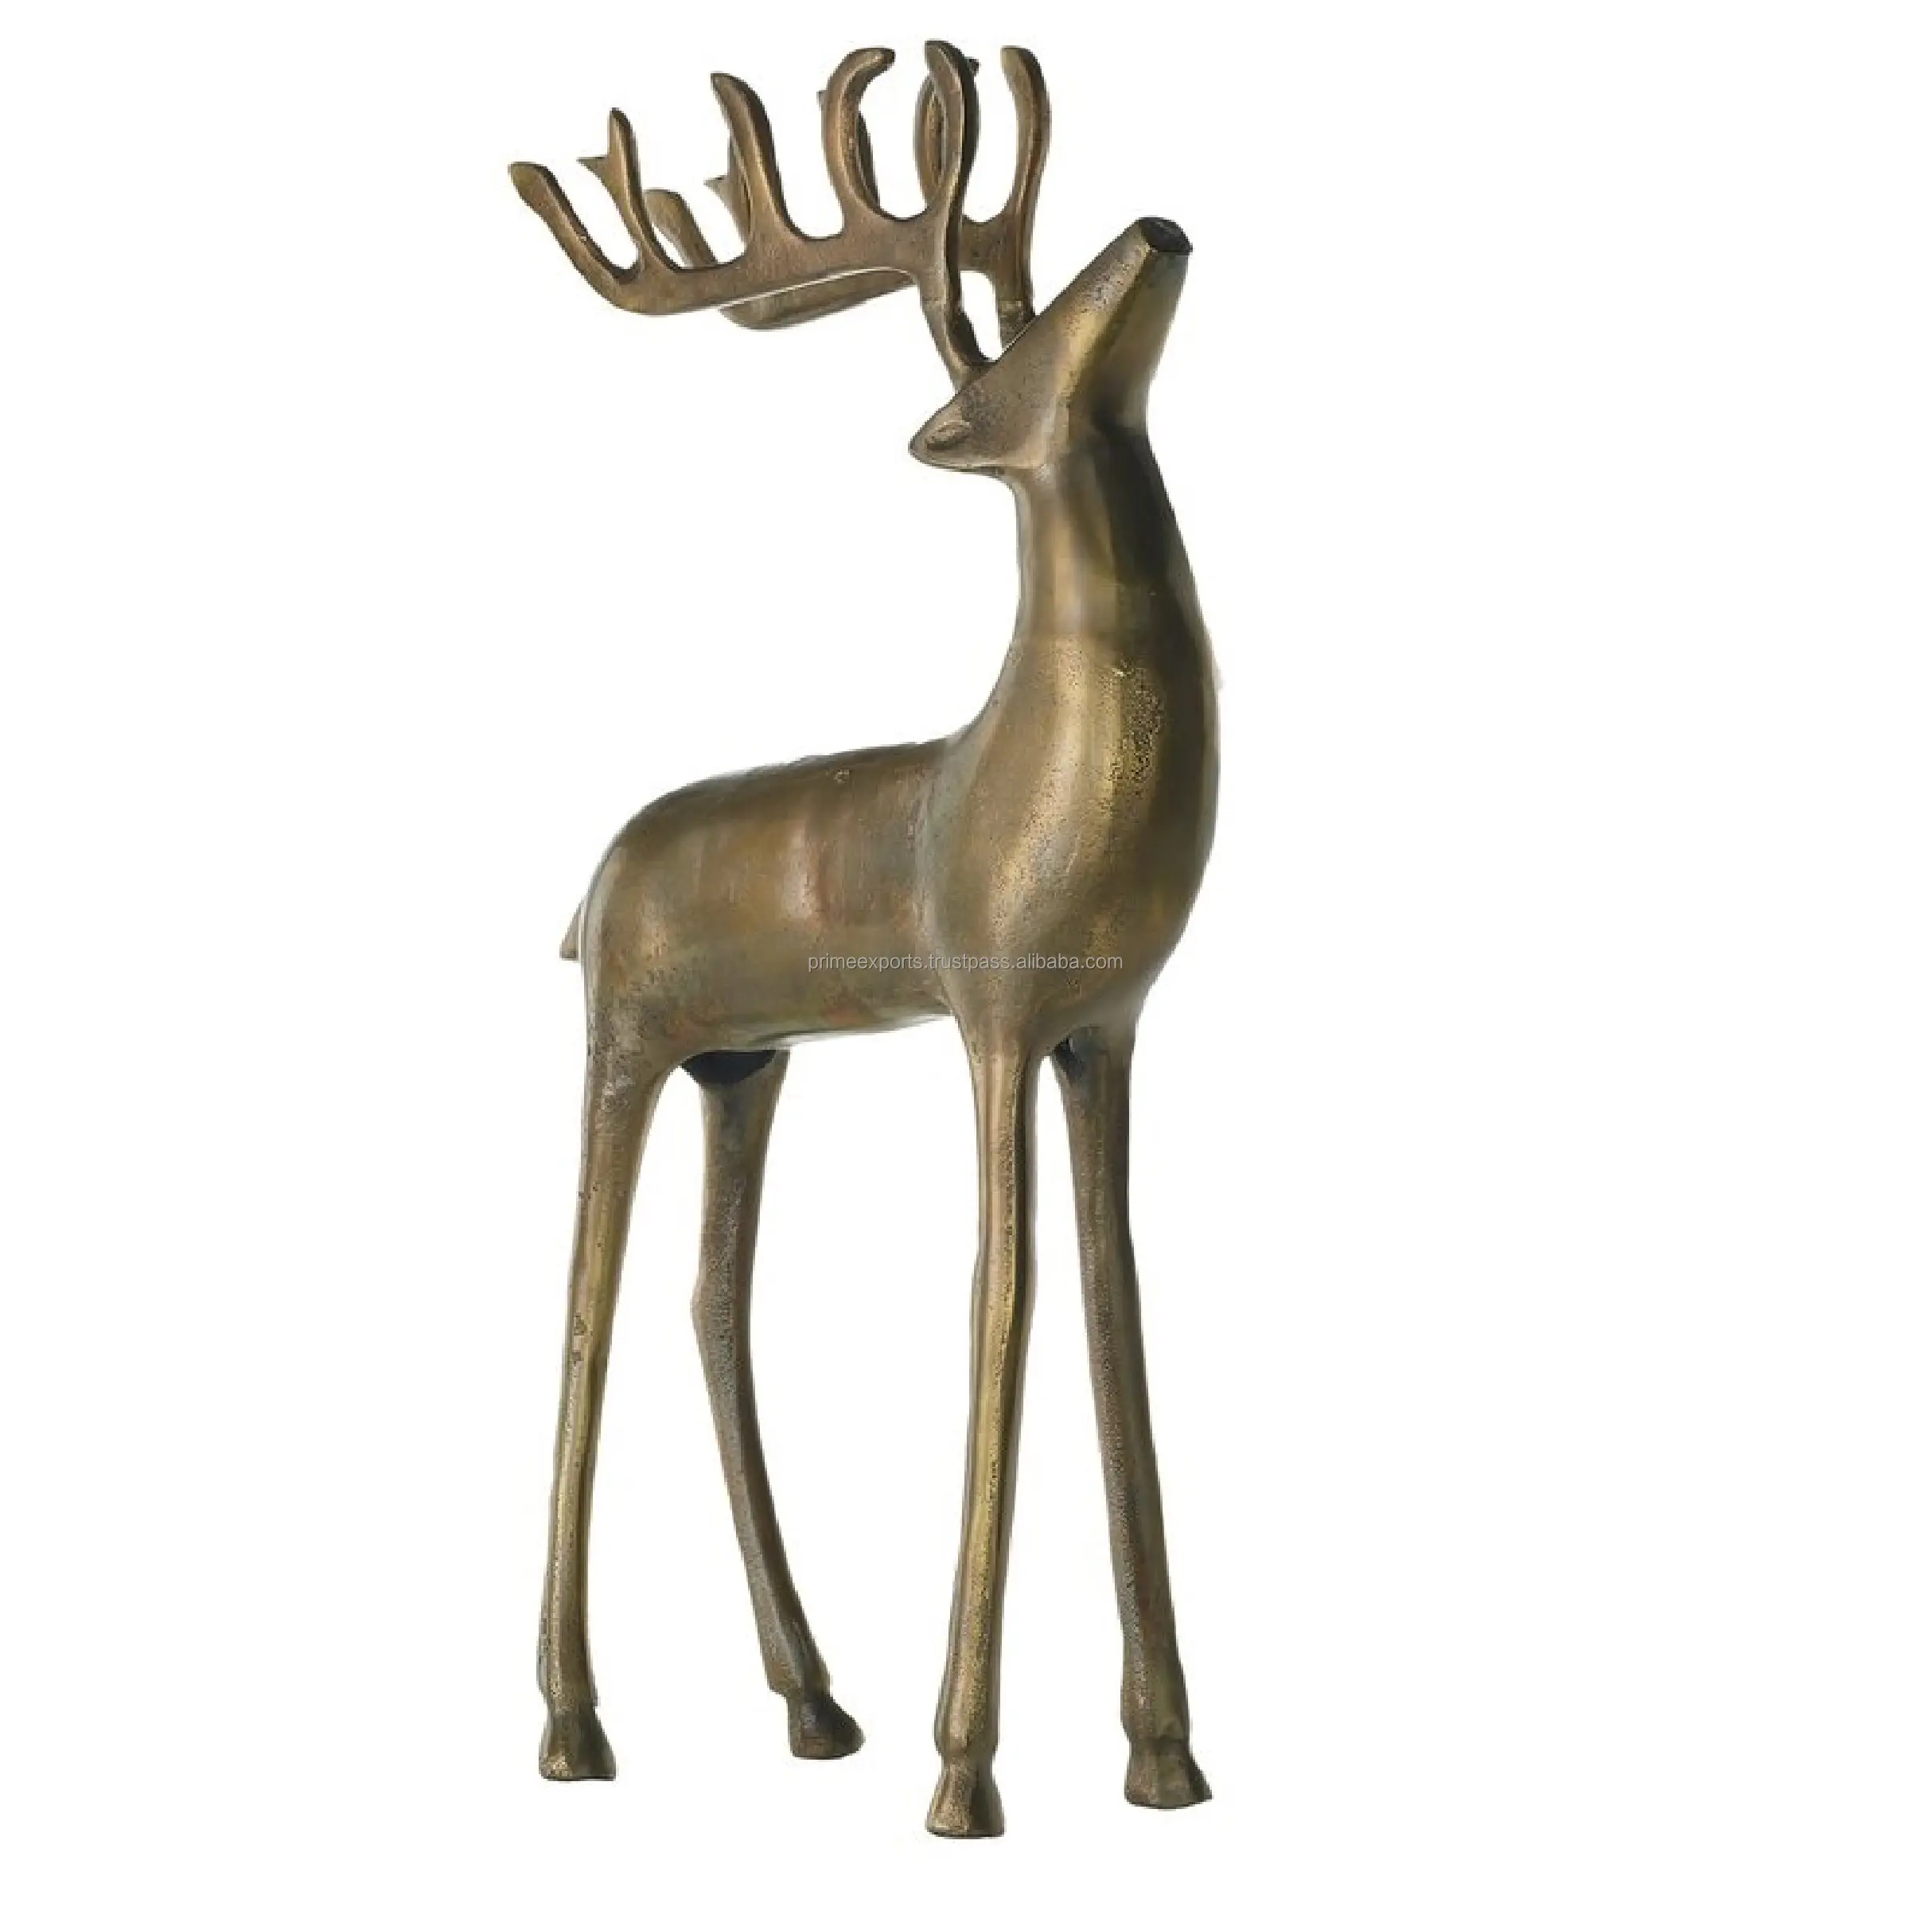 Figura decorativa de metal antiguo de latón para Navidad, figurita de animal de Reno de pie, escaparate, decoración festiva